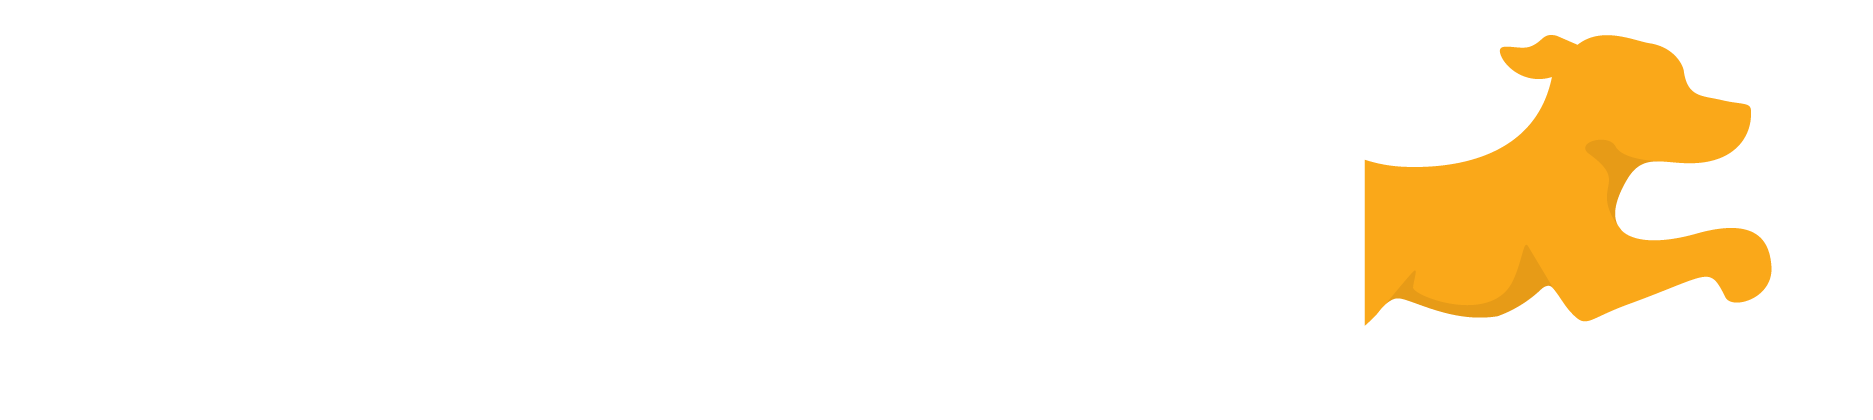 Fetch Blog | Unleashed